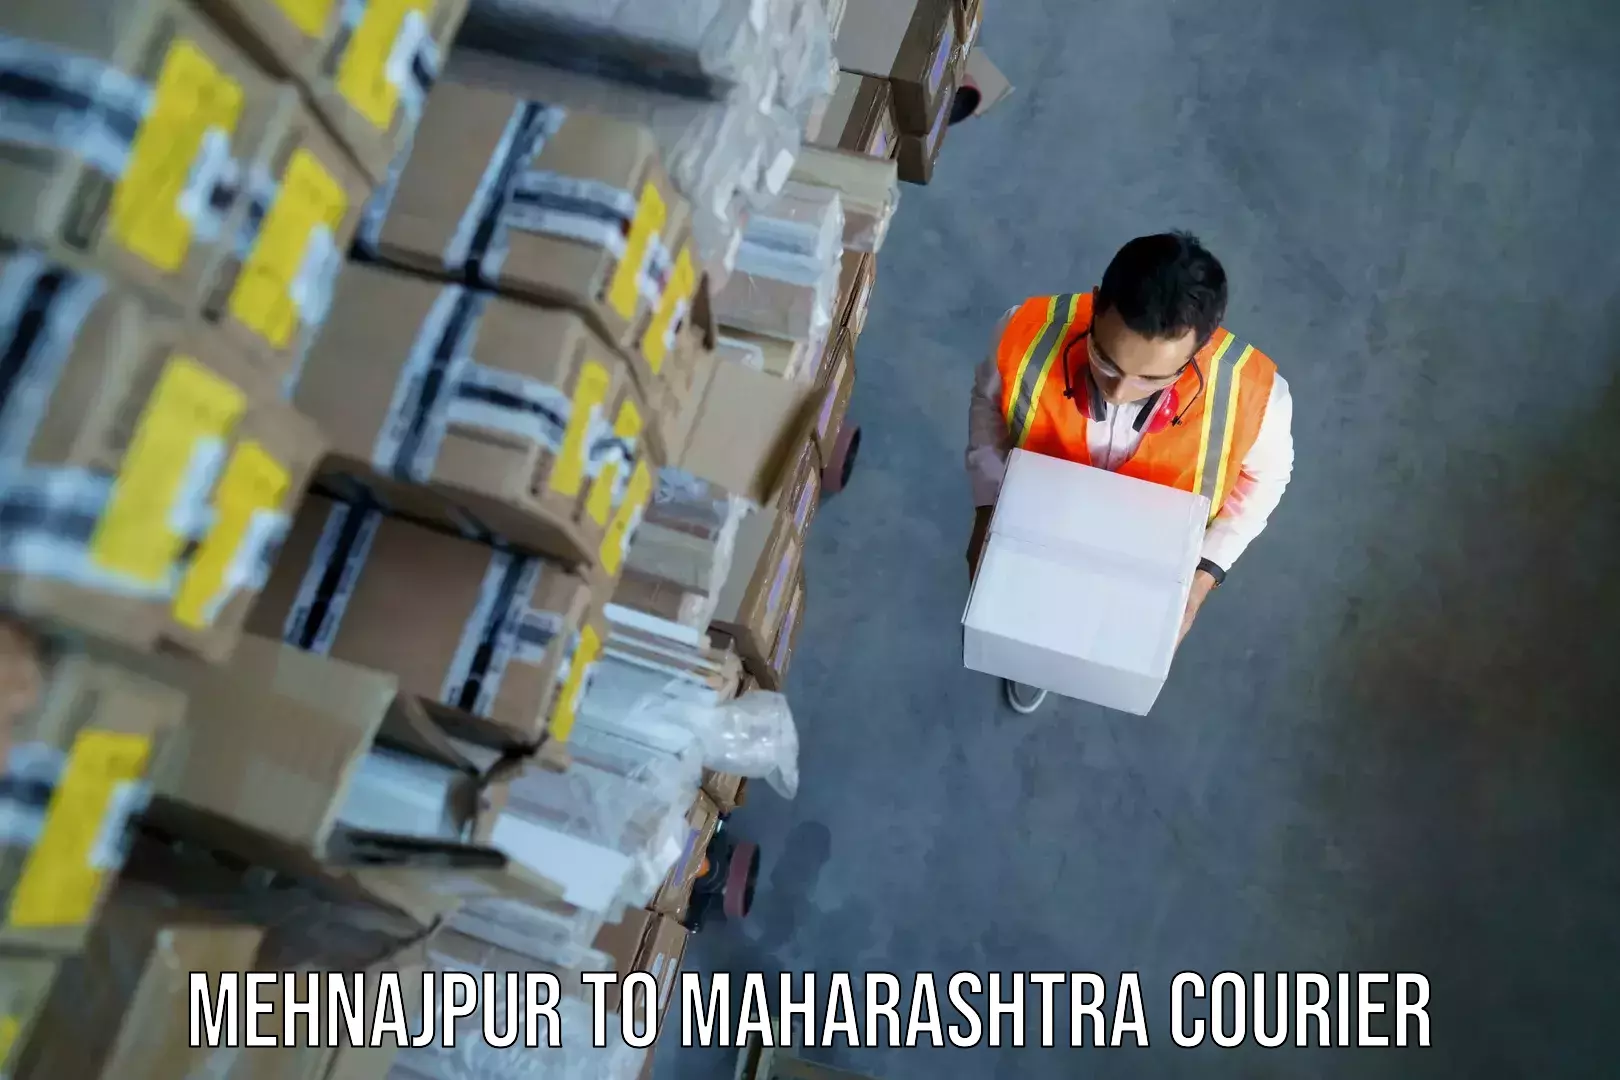 Luggage forwarding service Mehnajpur to Mumbai Port